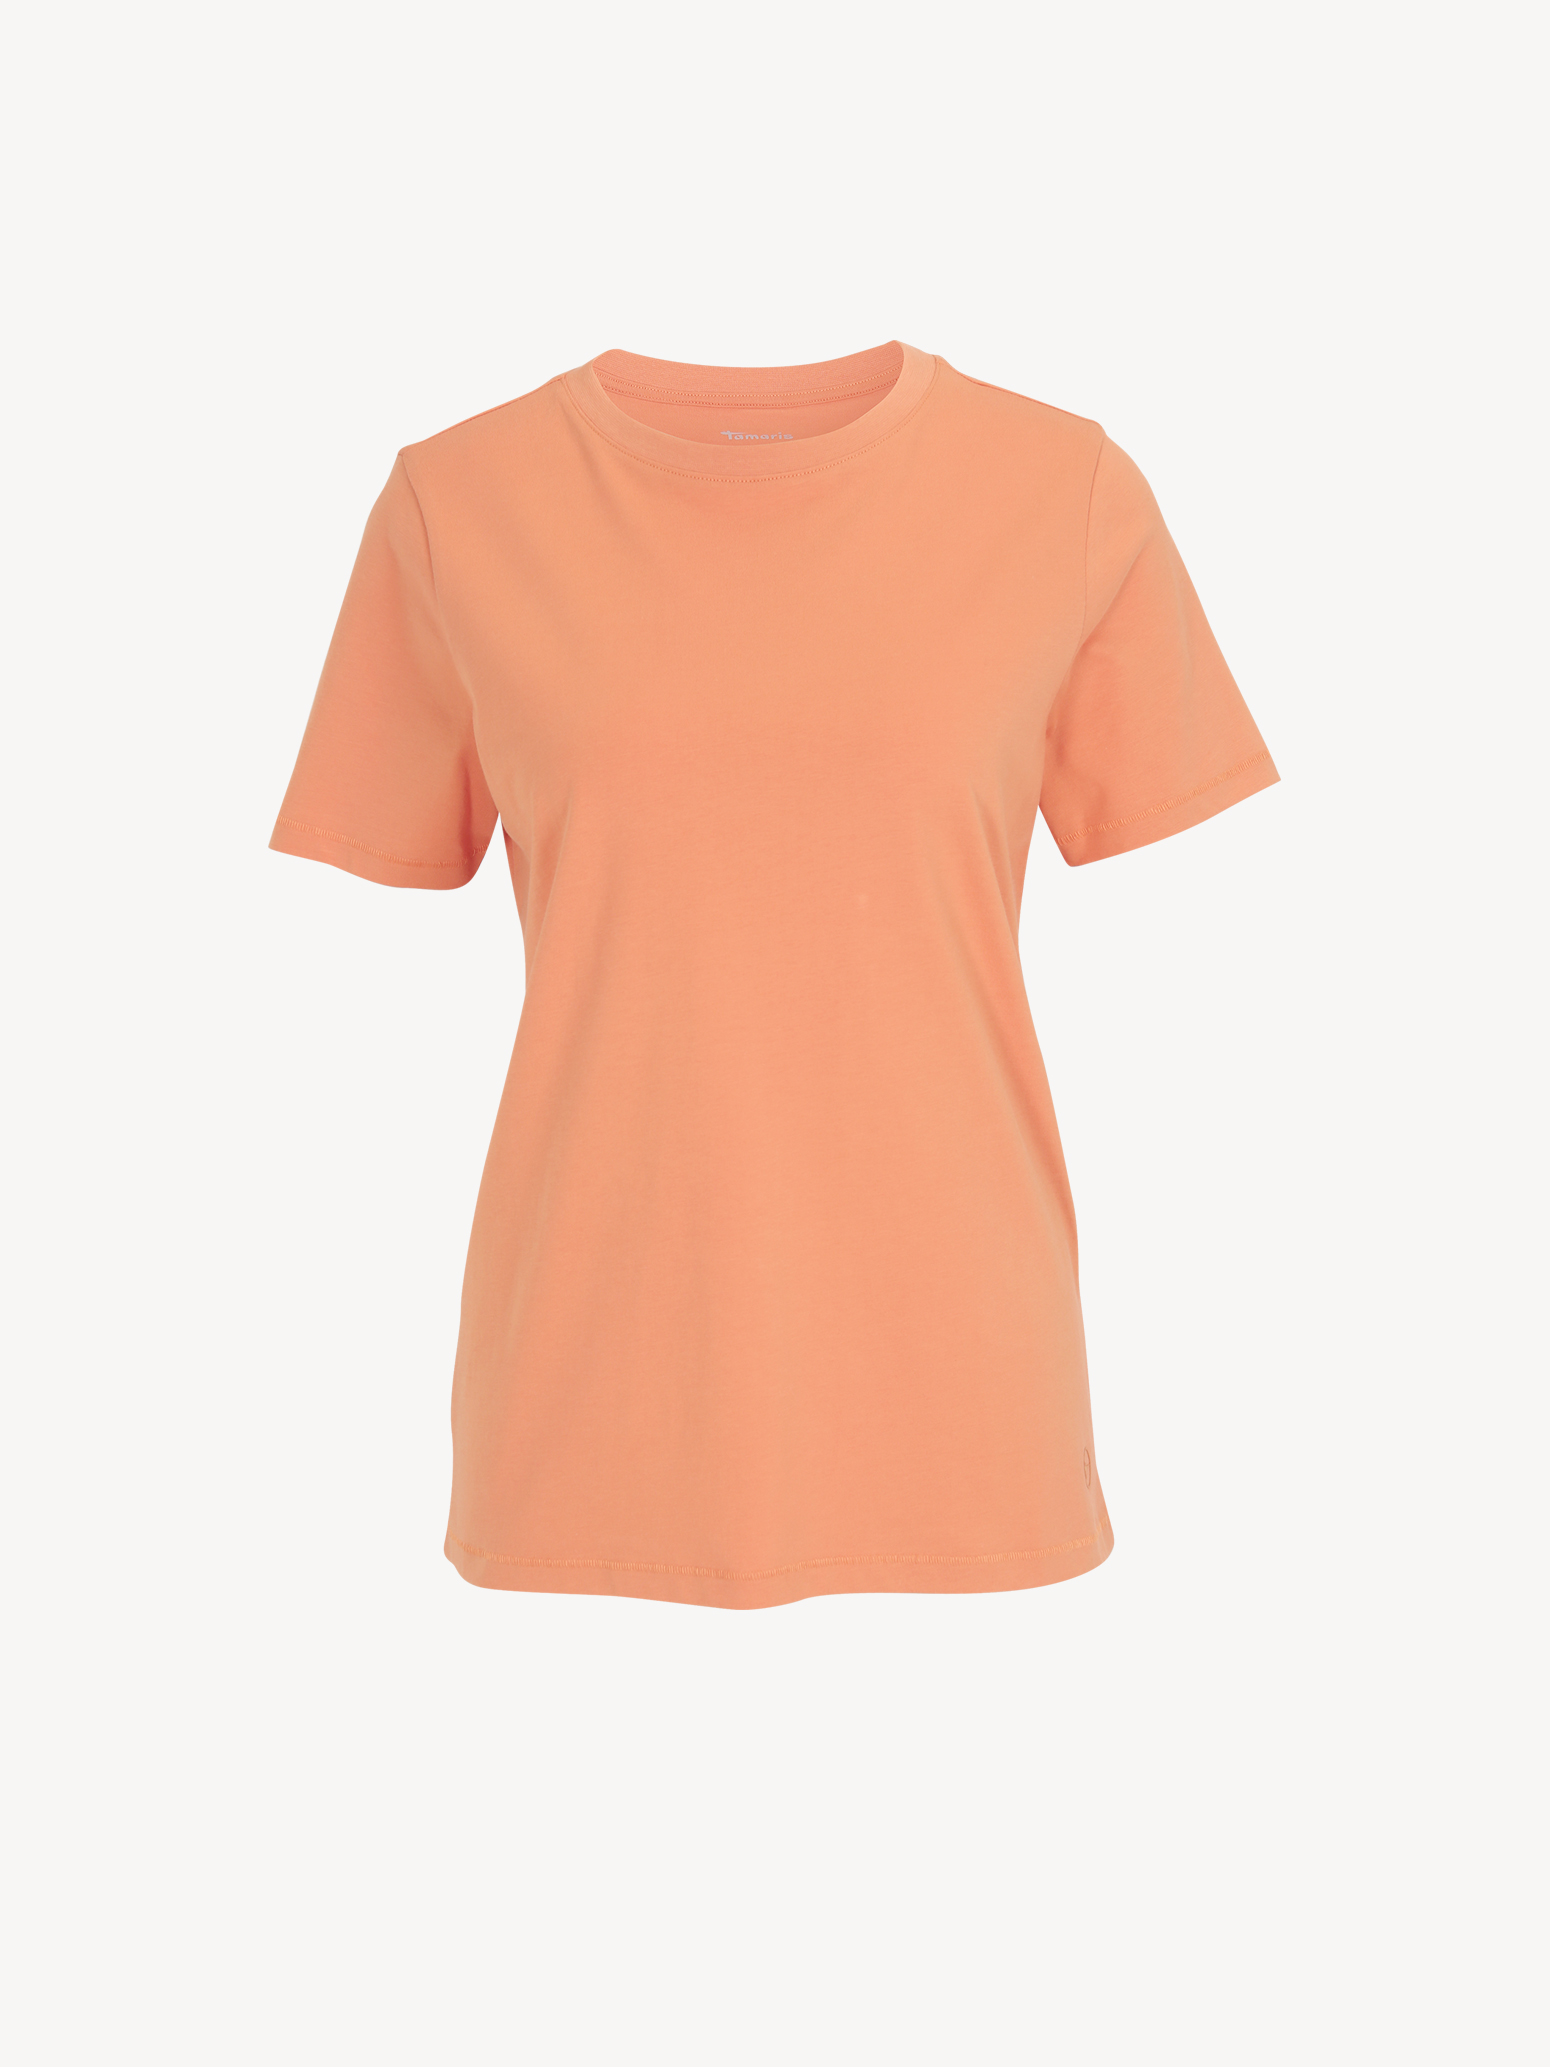 Μπλουζάκια Τ-σιρτ - πορτοκαλί